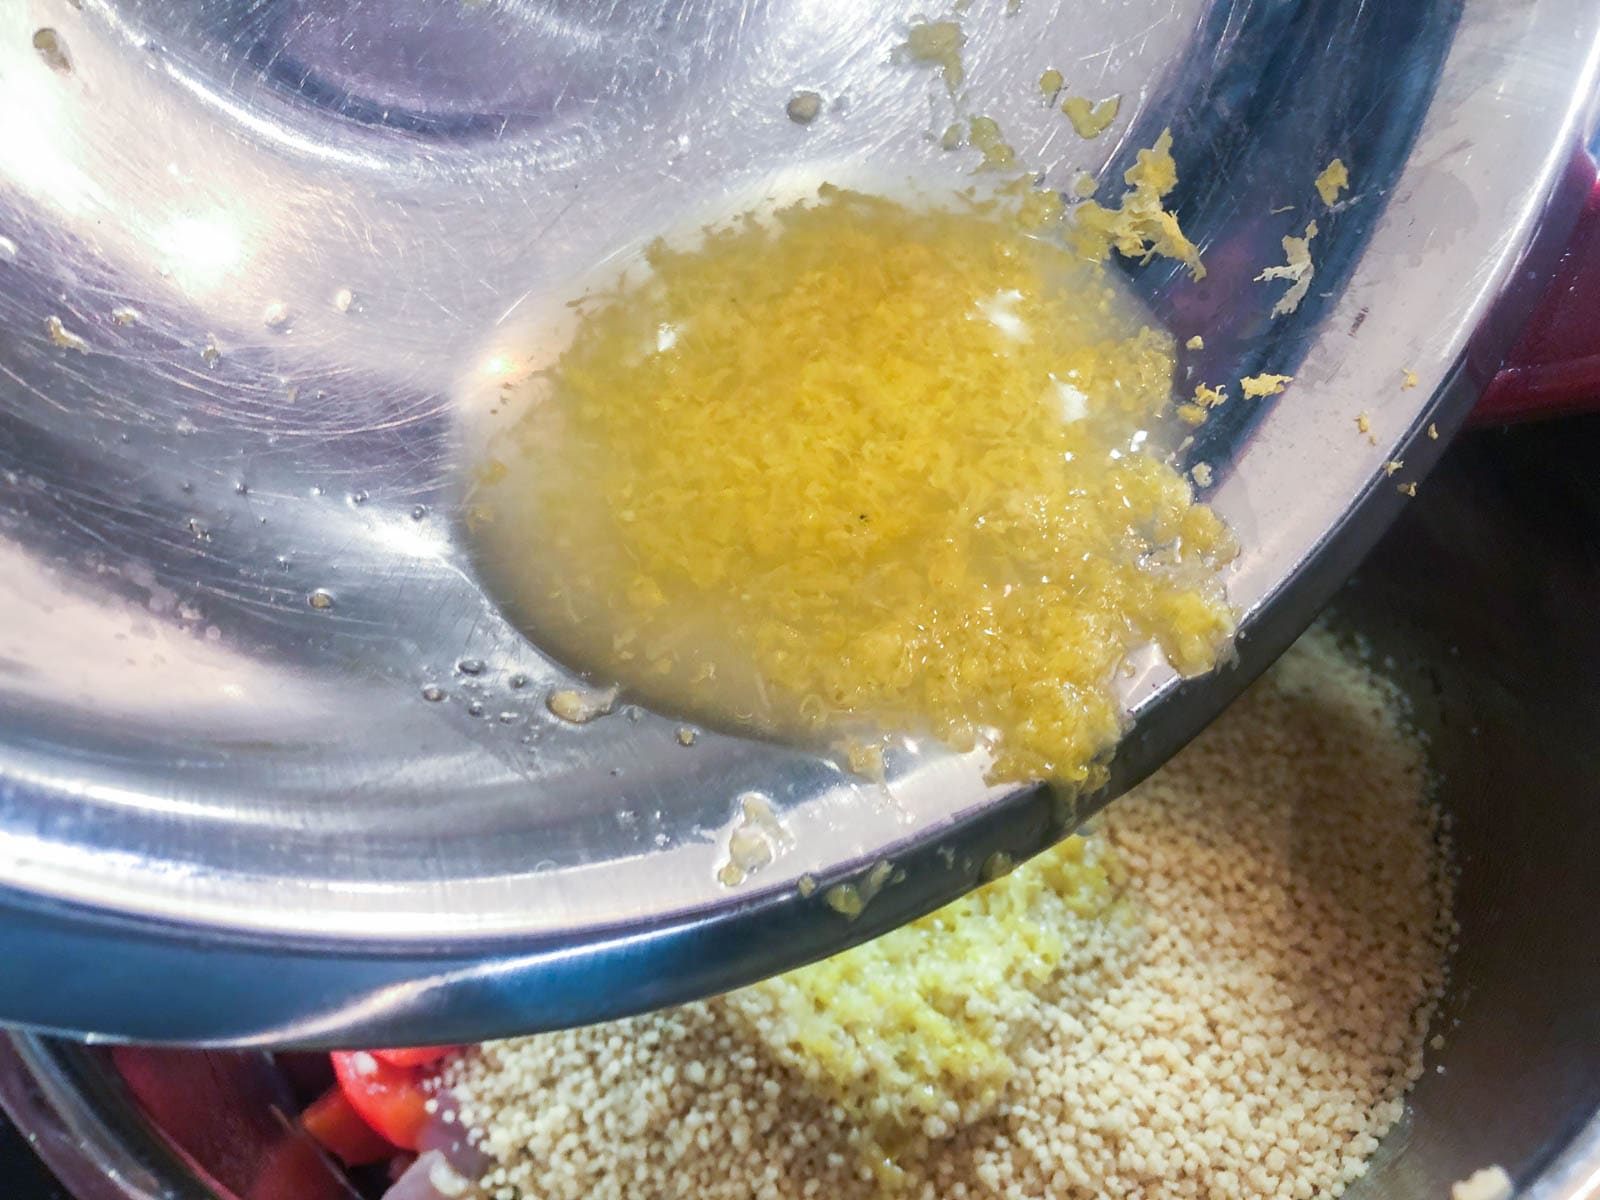 Adding lemon juice and zest to couscous.